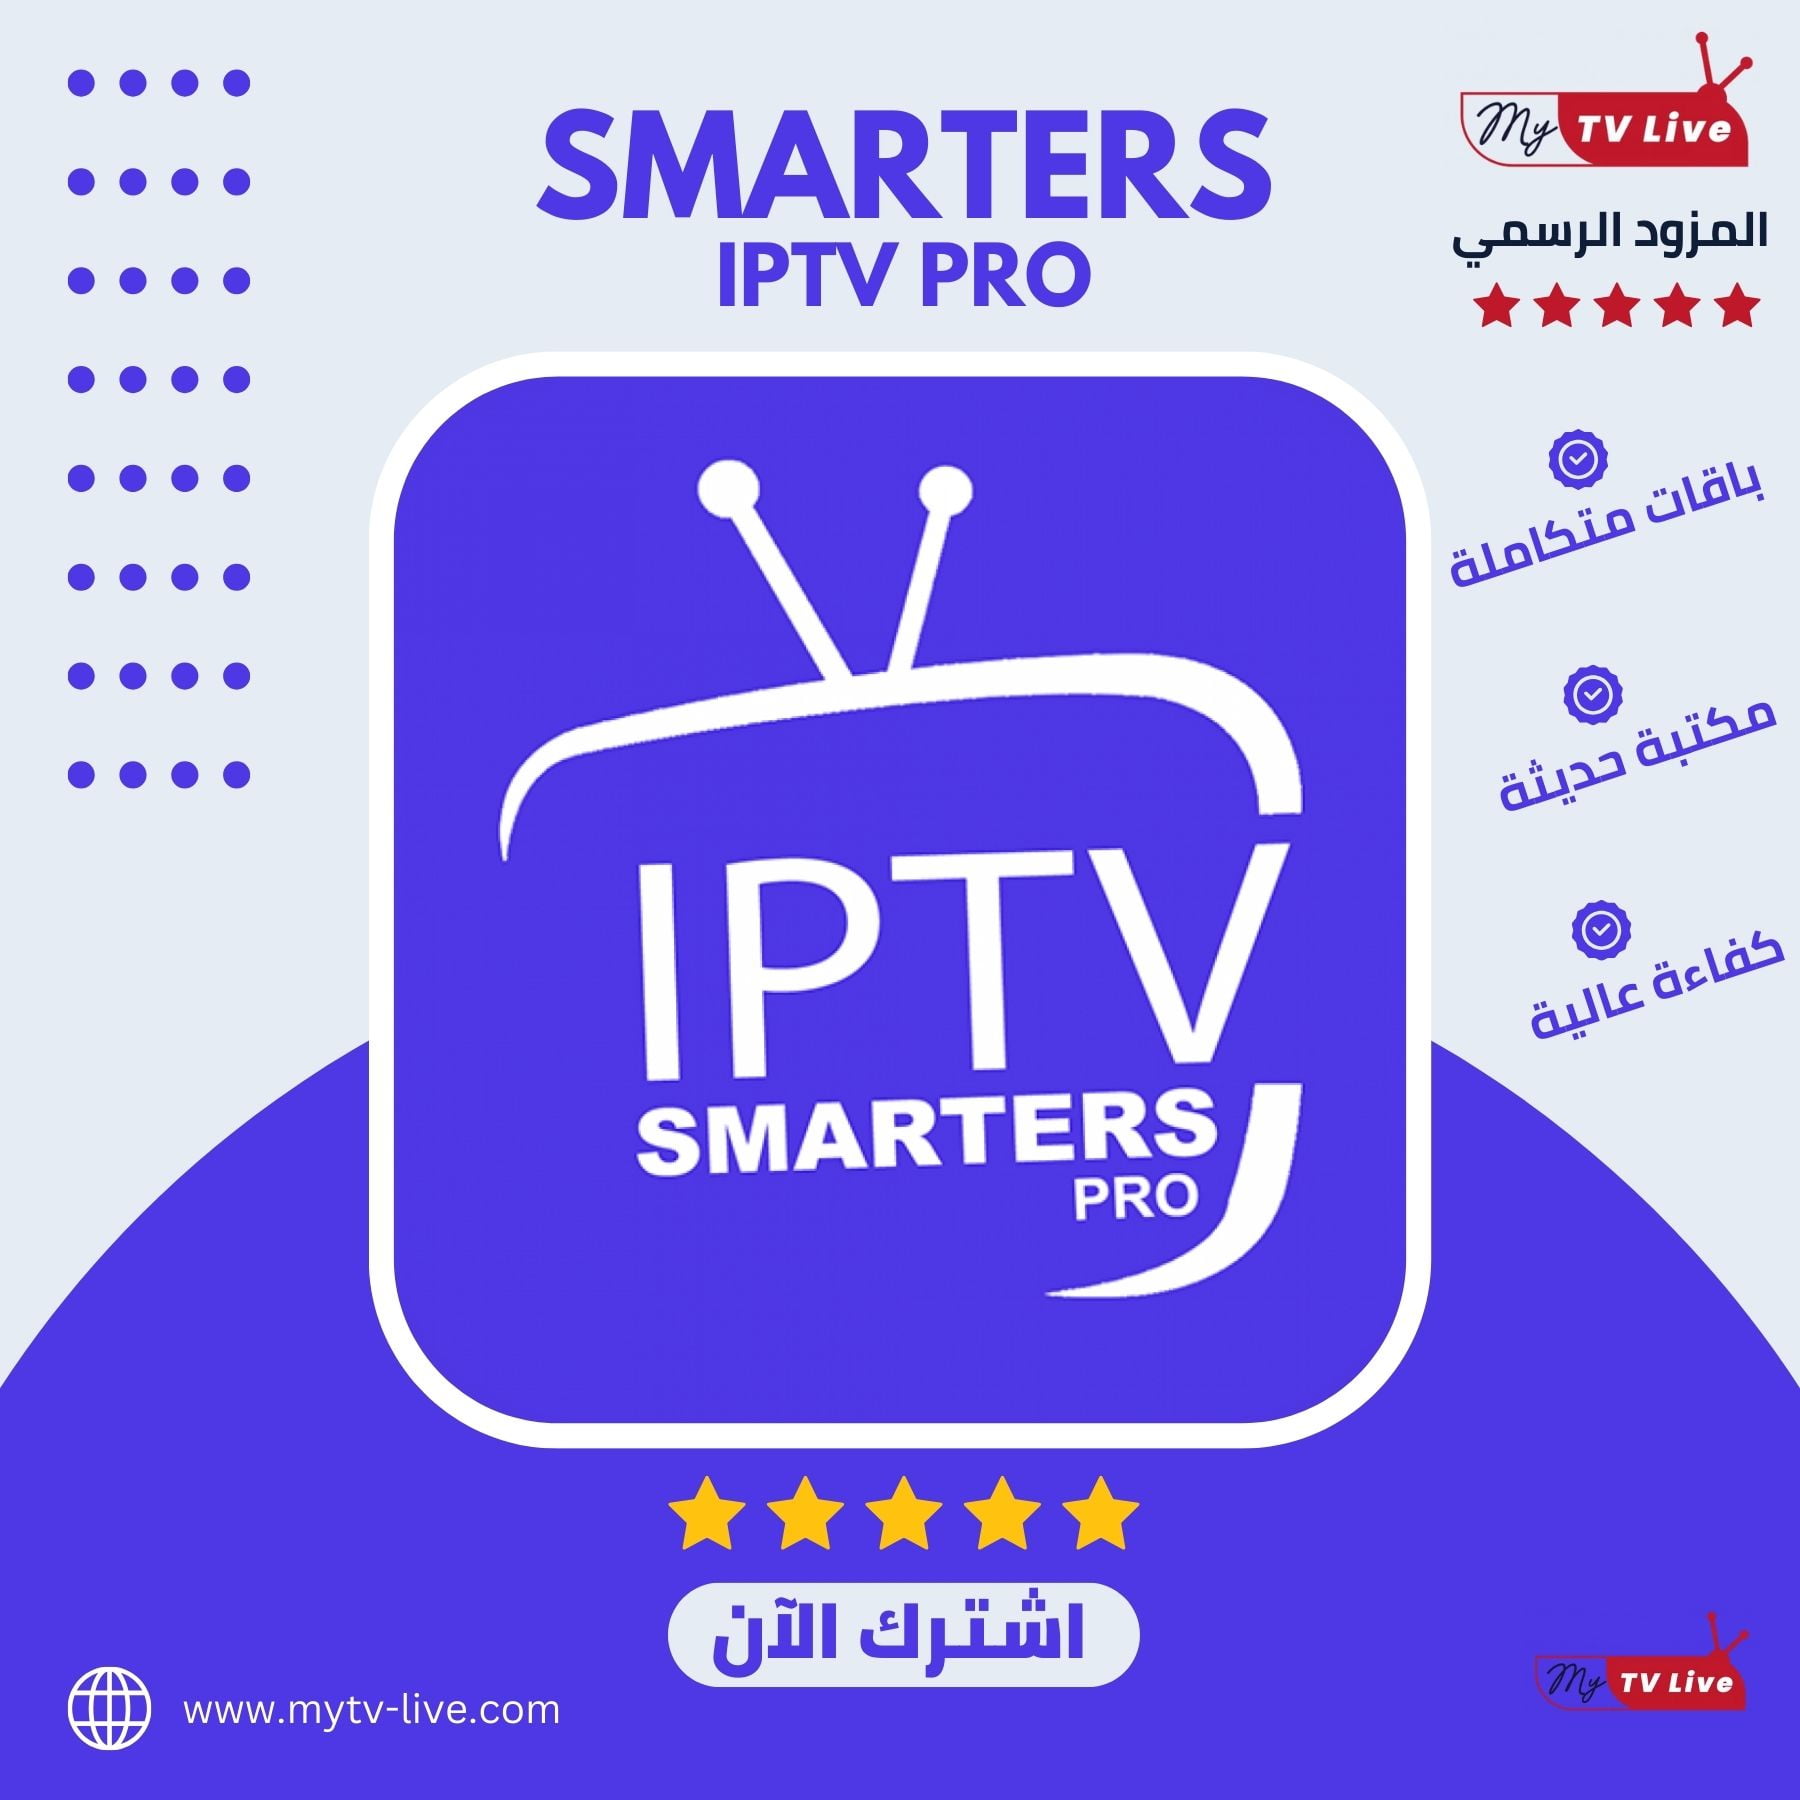 أفضل خدمة IPTV للاجهزة الاندرويد بسرعة فائقة - أفضل خدمة IPTV للاجهزة الاندرويد: اختيار الباقة